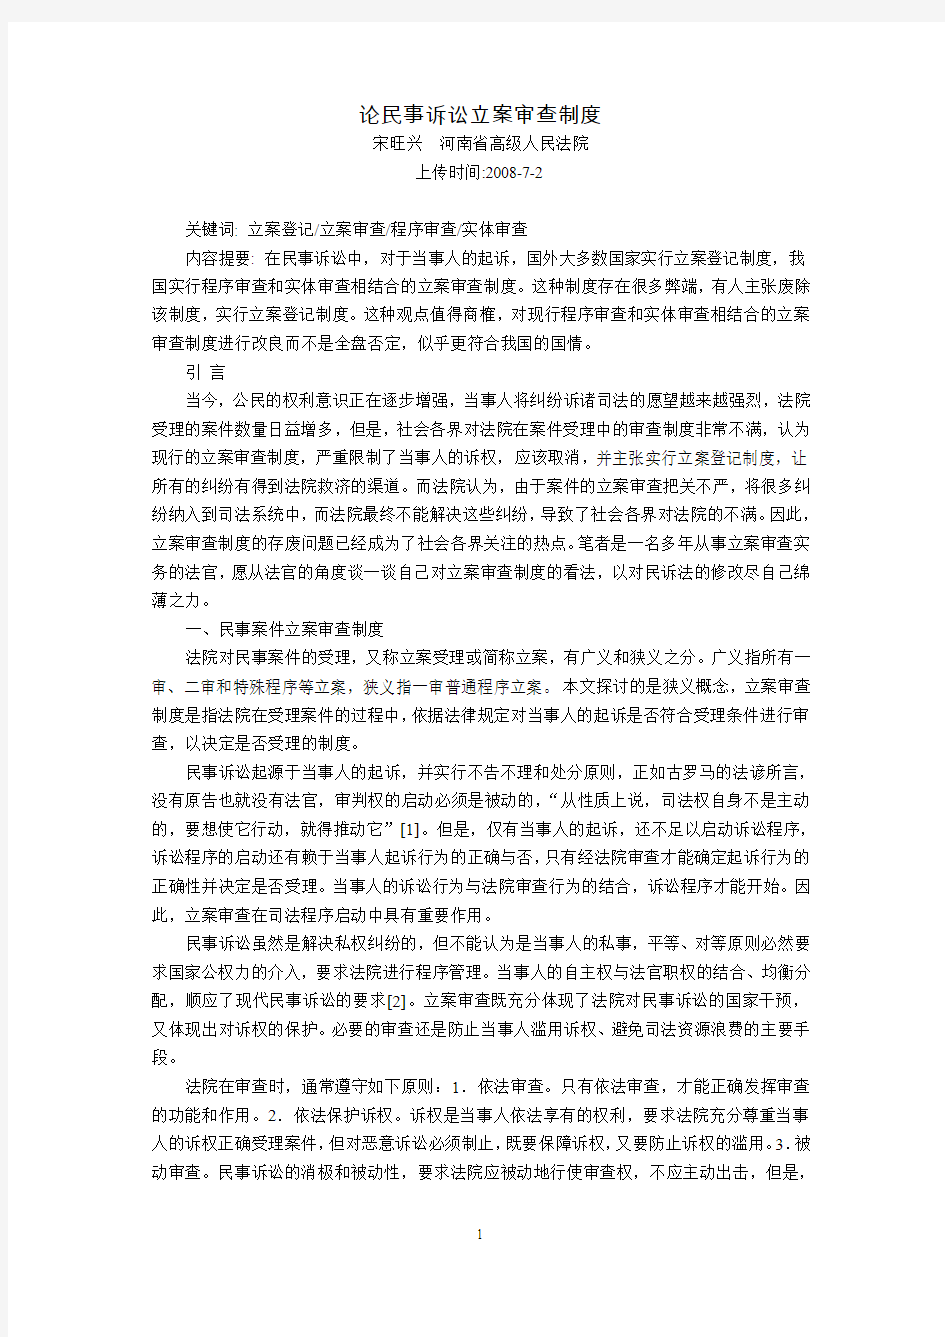 论民事诉讼立案审查制度(宋旺兴  河南省高级人民法院)